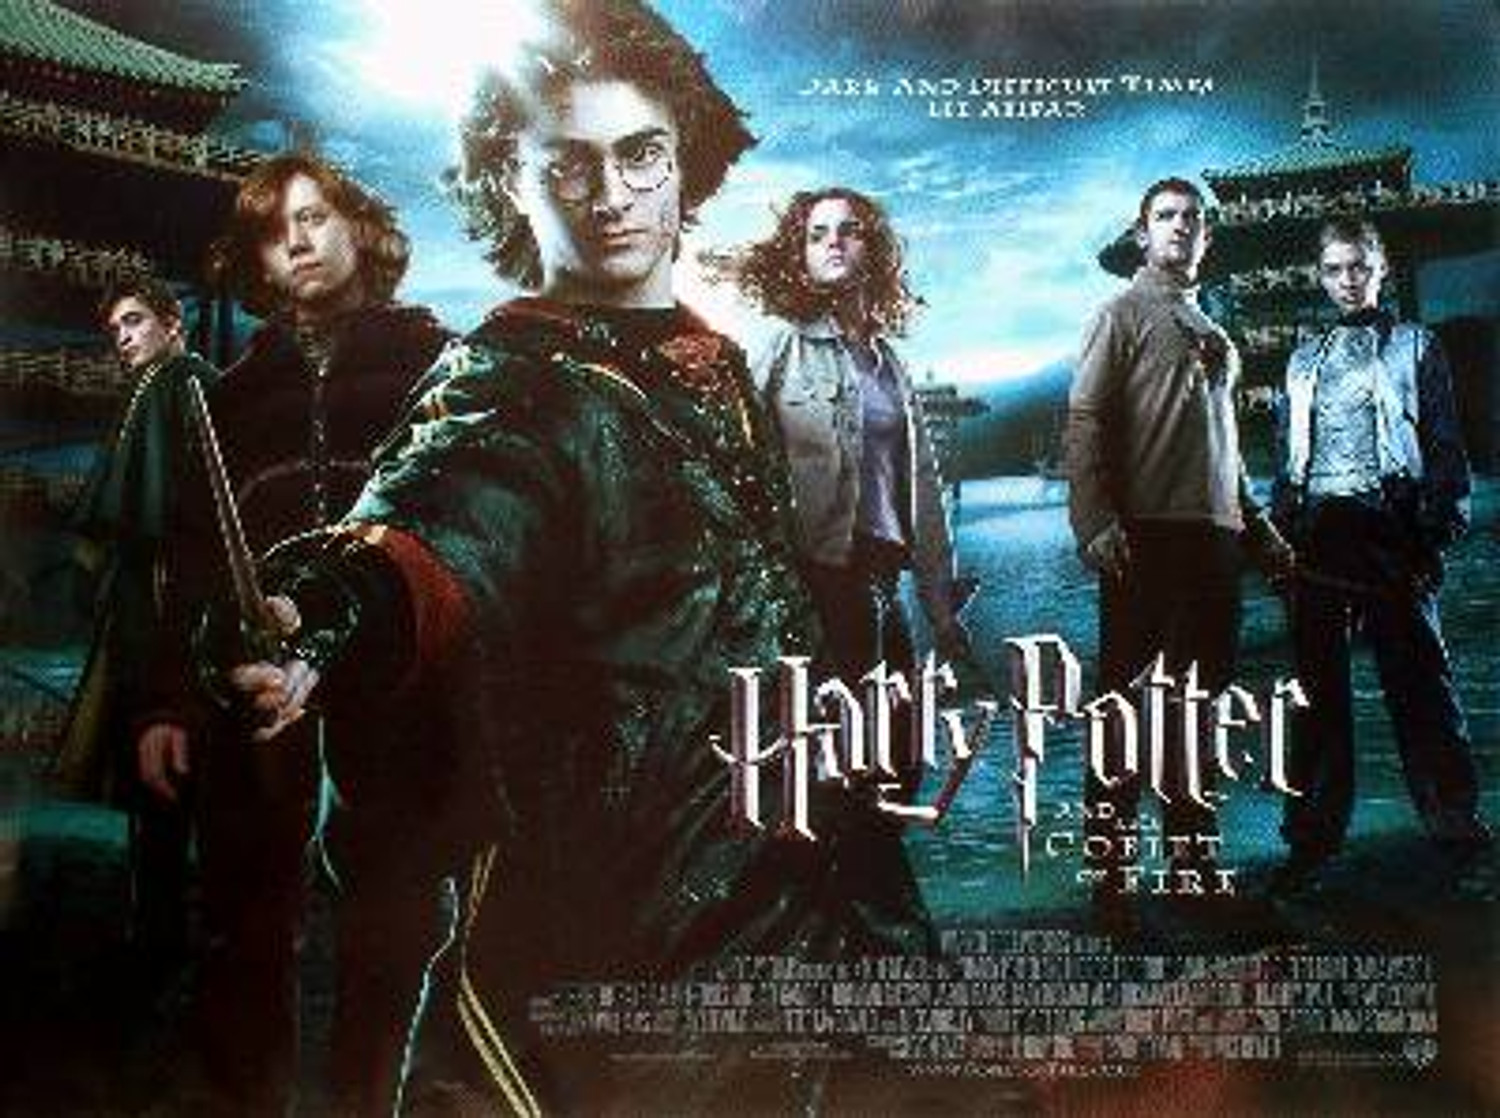 Posters Harry Potter Page 2 - Posters Cinéma et séries TV